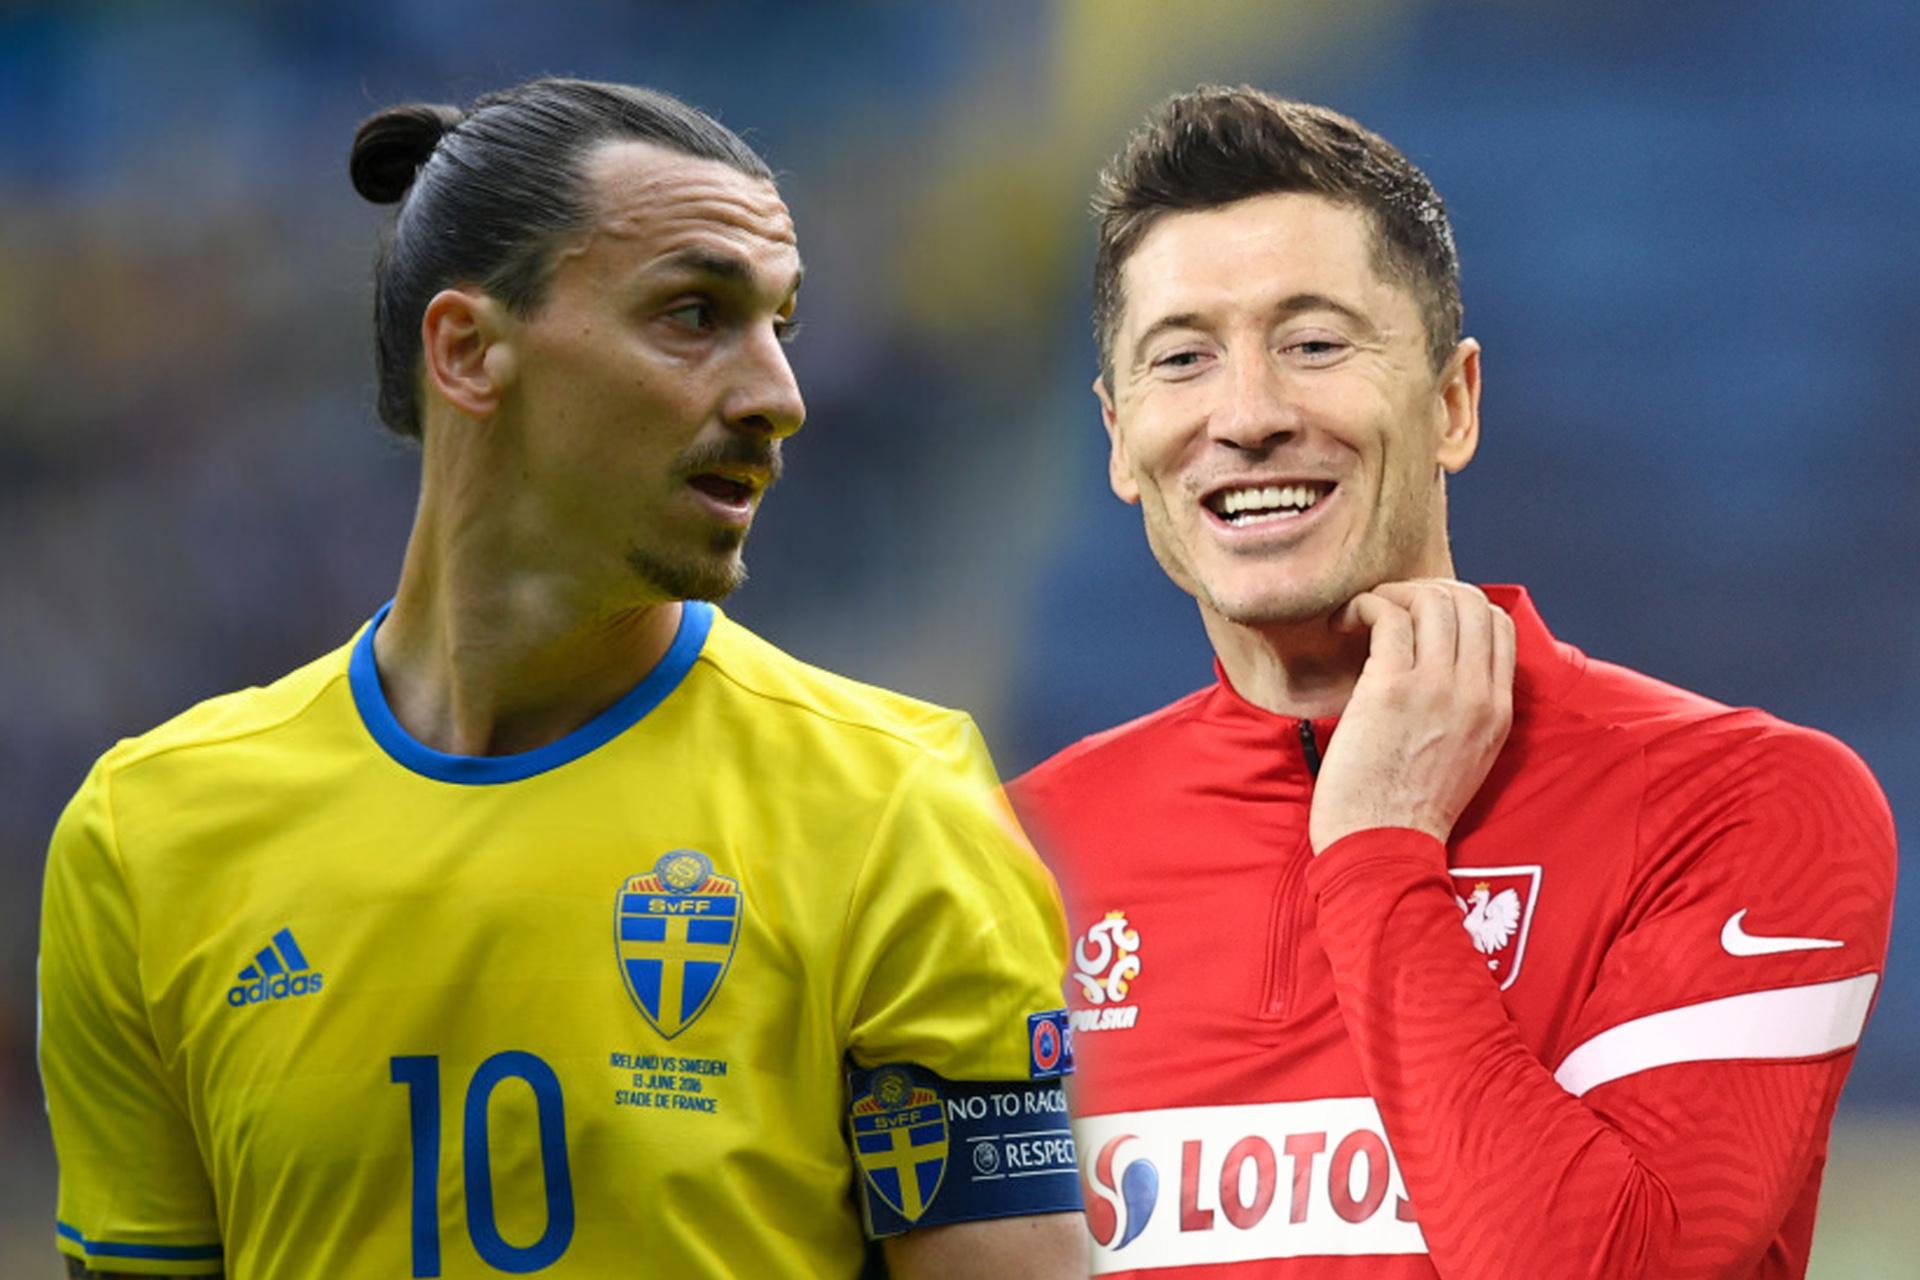 Mecz Polska-Szwecja nie tylko na boisku.  Porównanie złotego dan korony